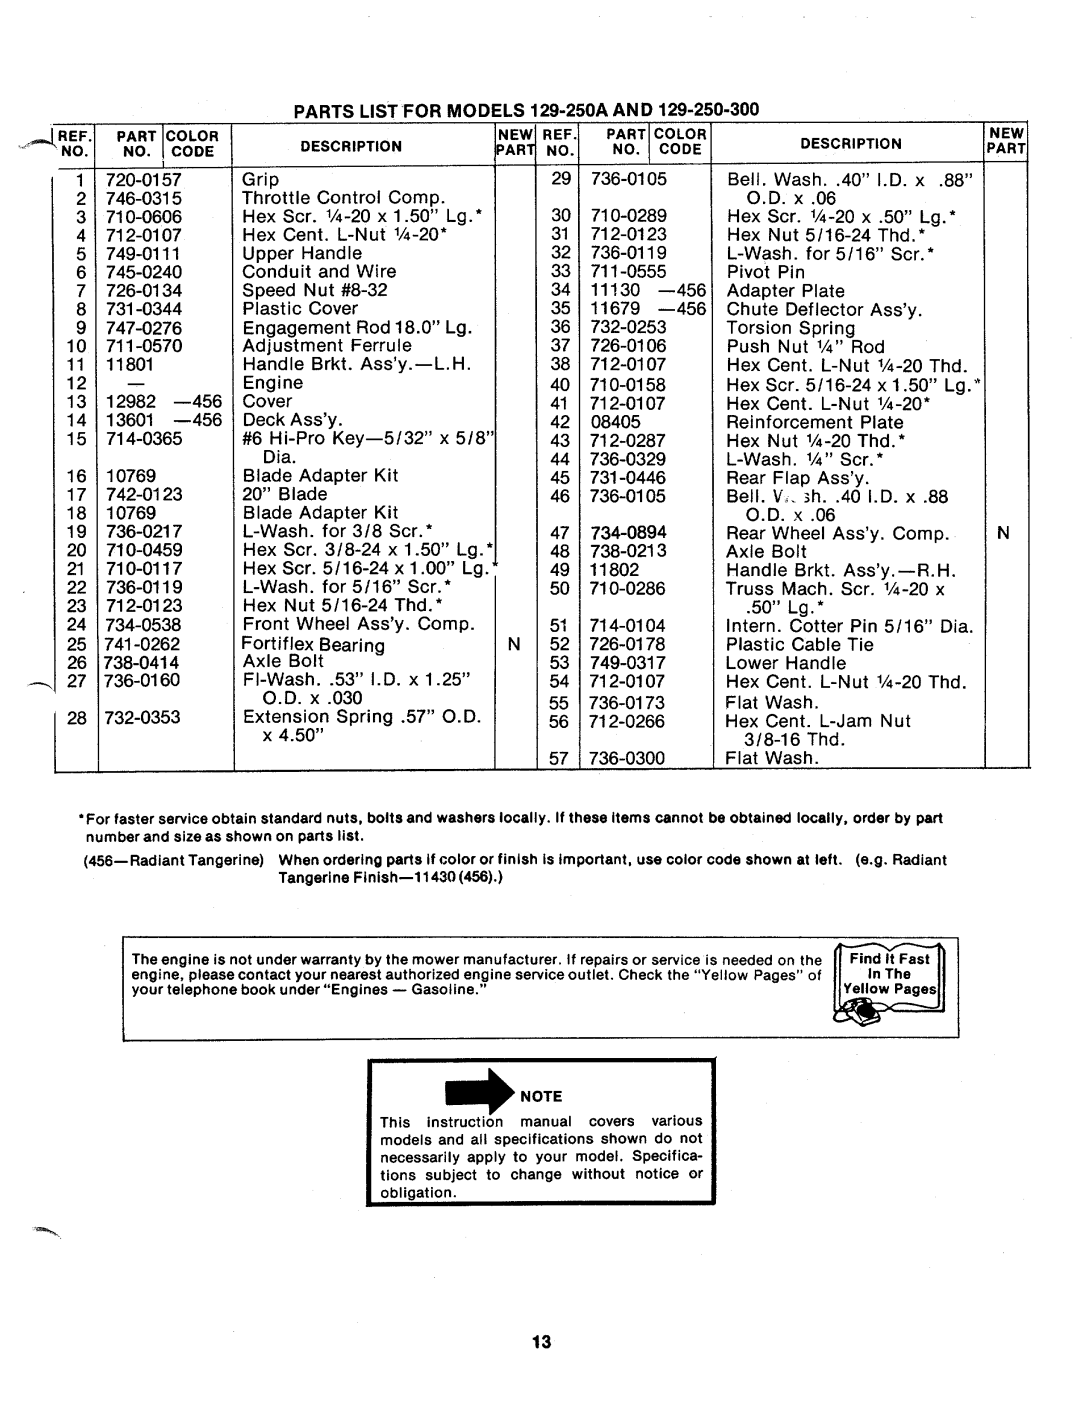 MTD 129-250-300, 129-250A manual 